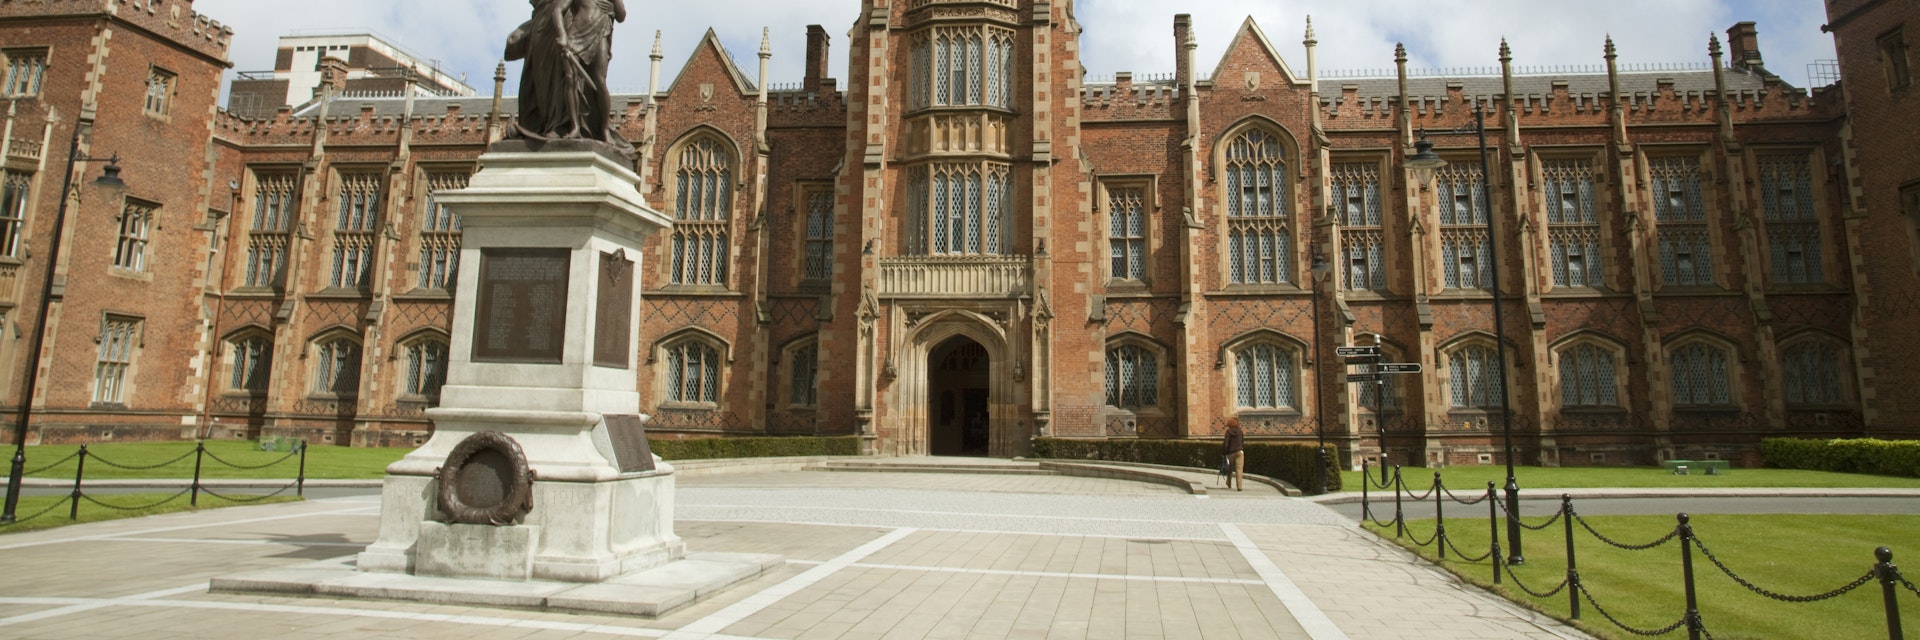 Belfast, Ireland; Queen's University